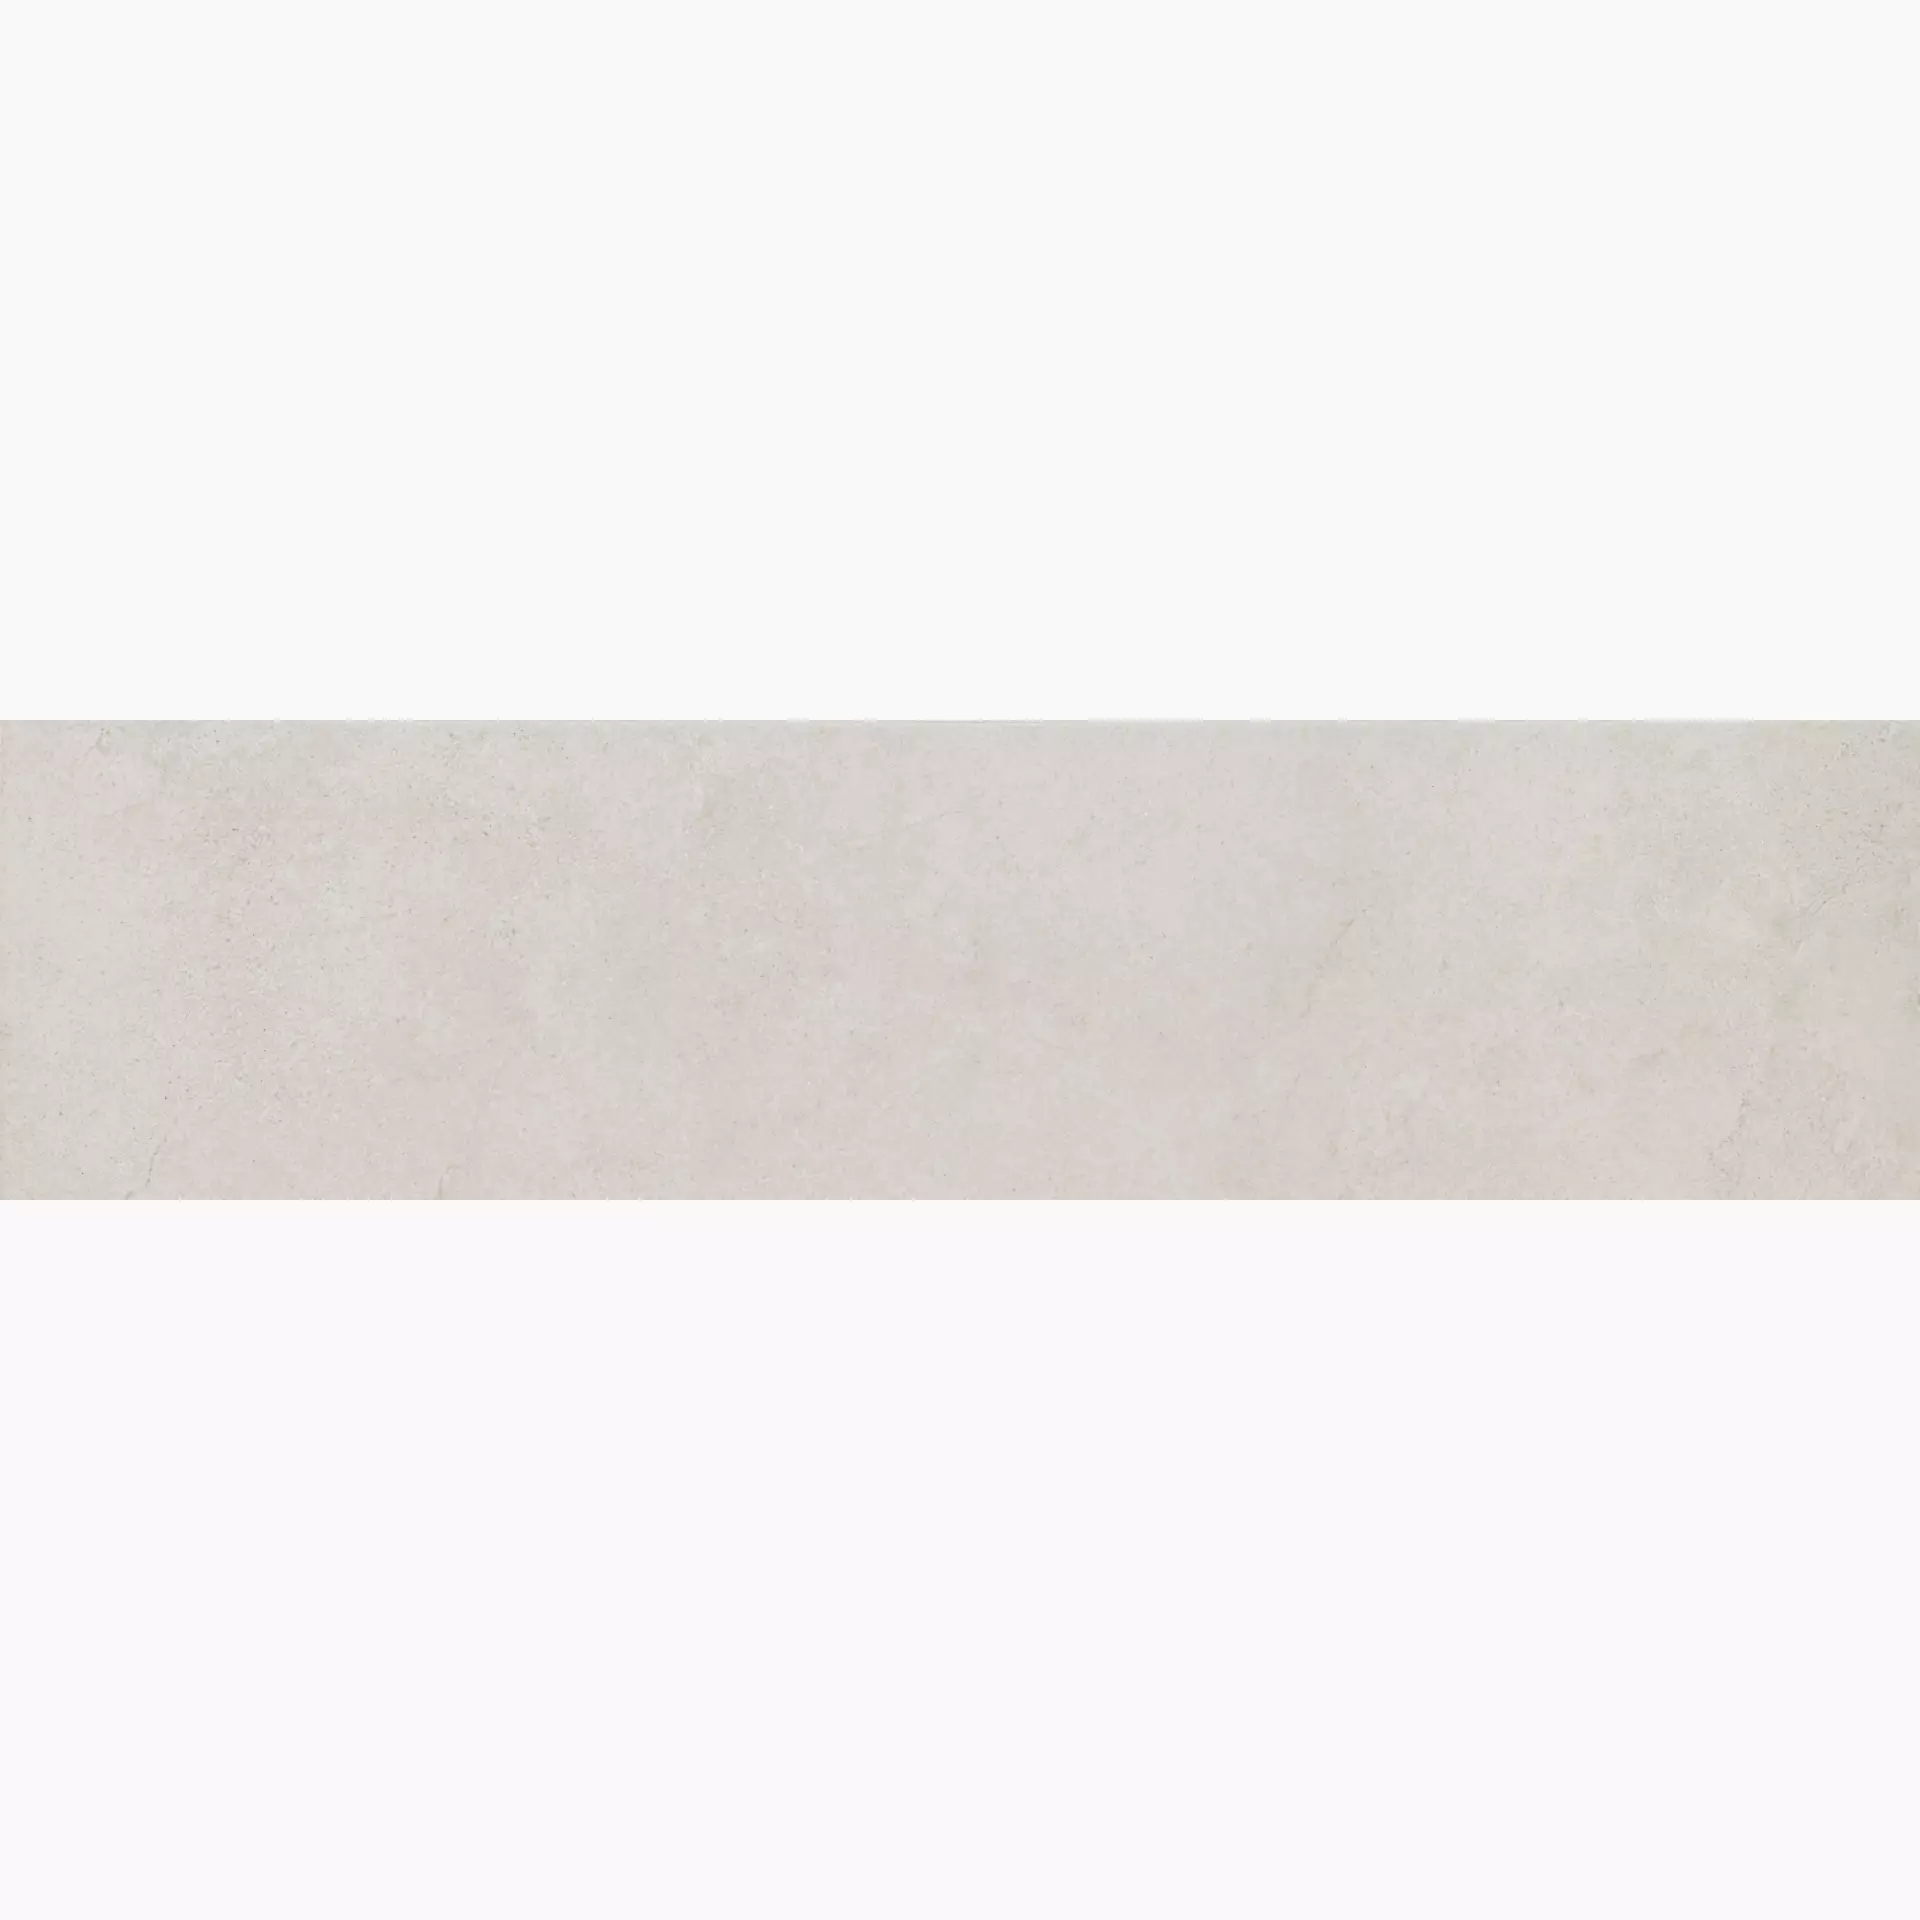 Marazzi Mystone Kashmir Bianco Naturale – Matt MLP5 30x120cm rectified 10mm